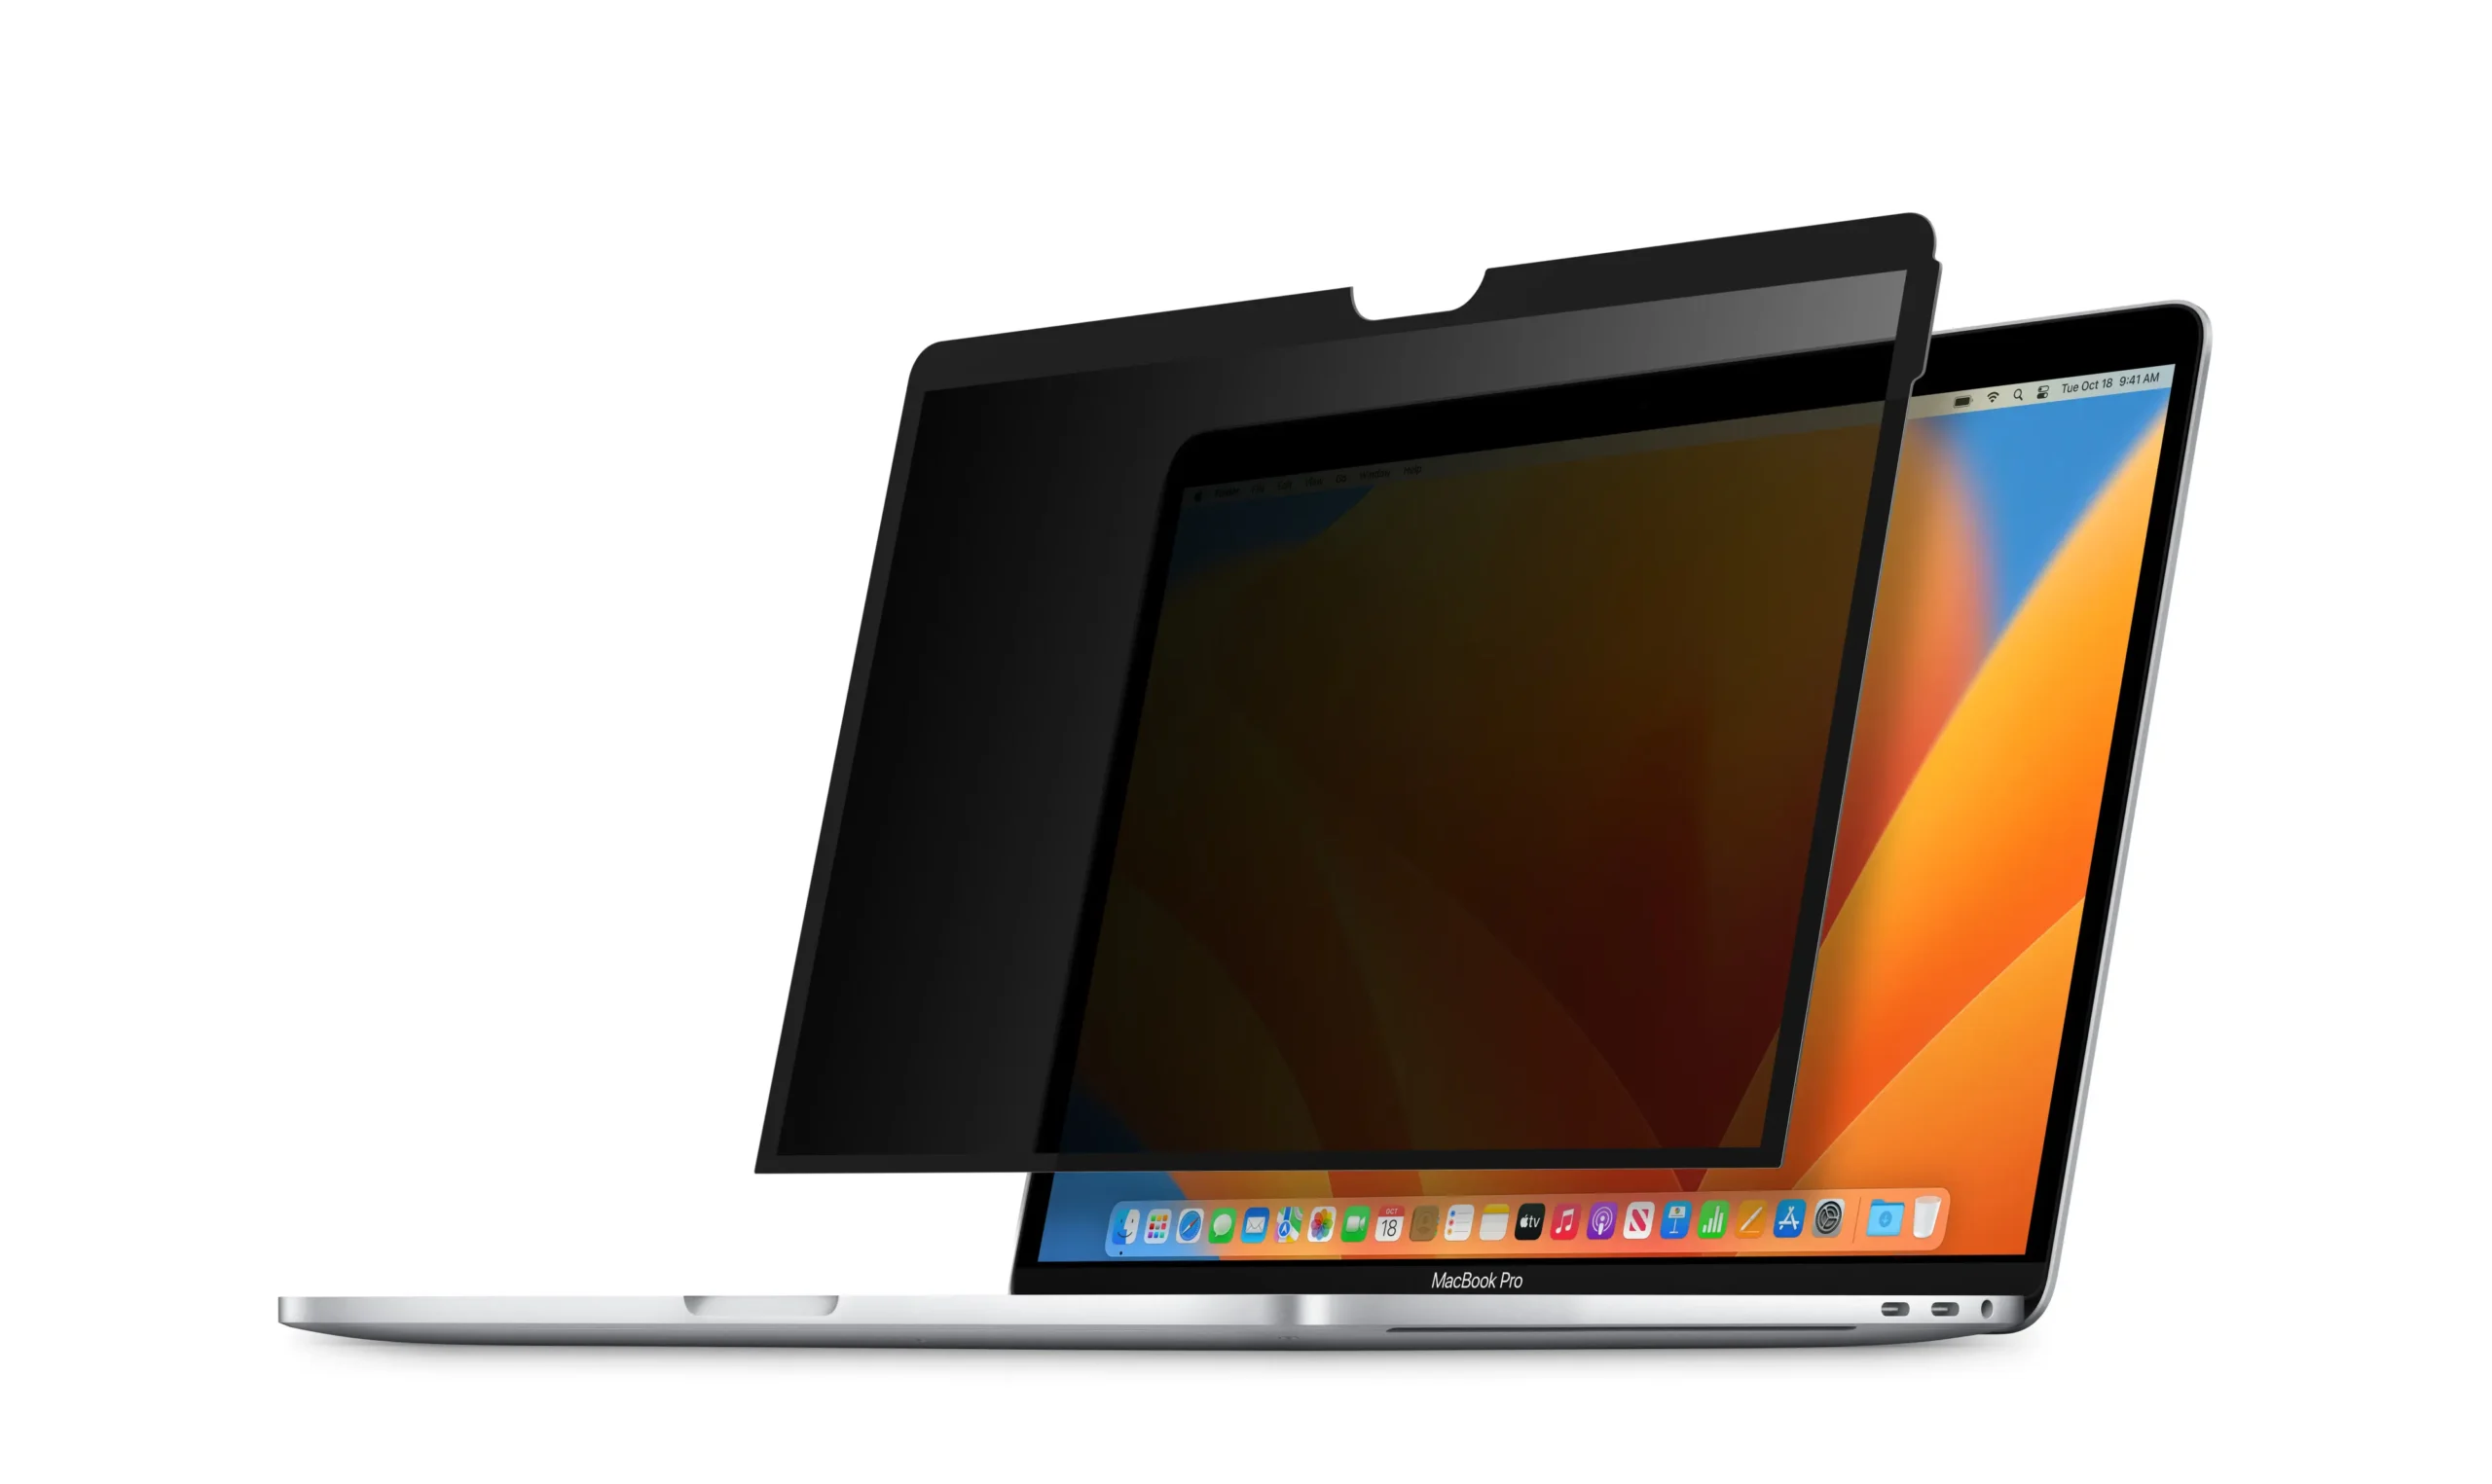 protector de pantalla macbook - Cómo proteger mi Macbook Pro